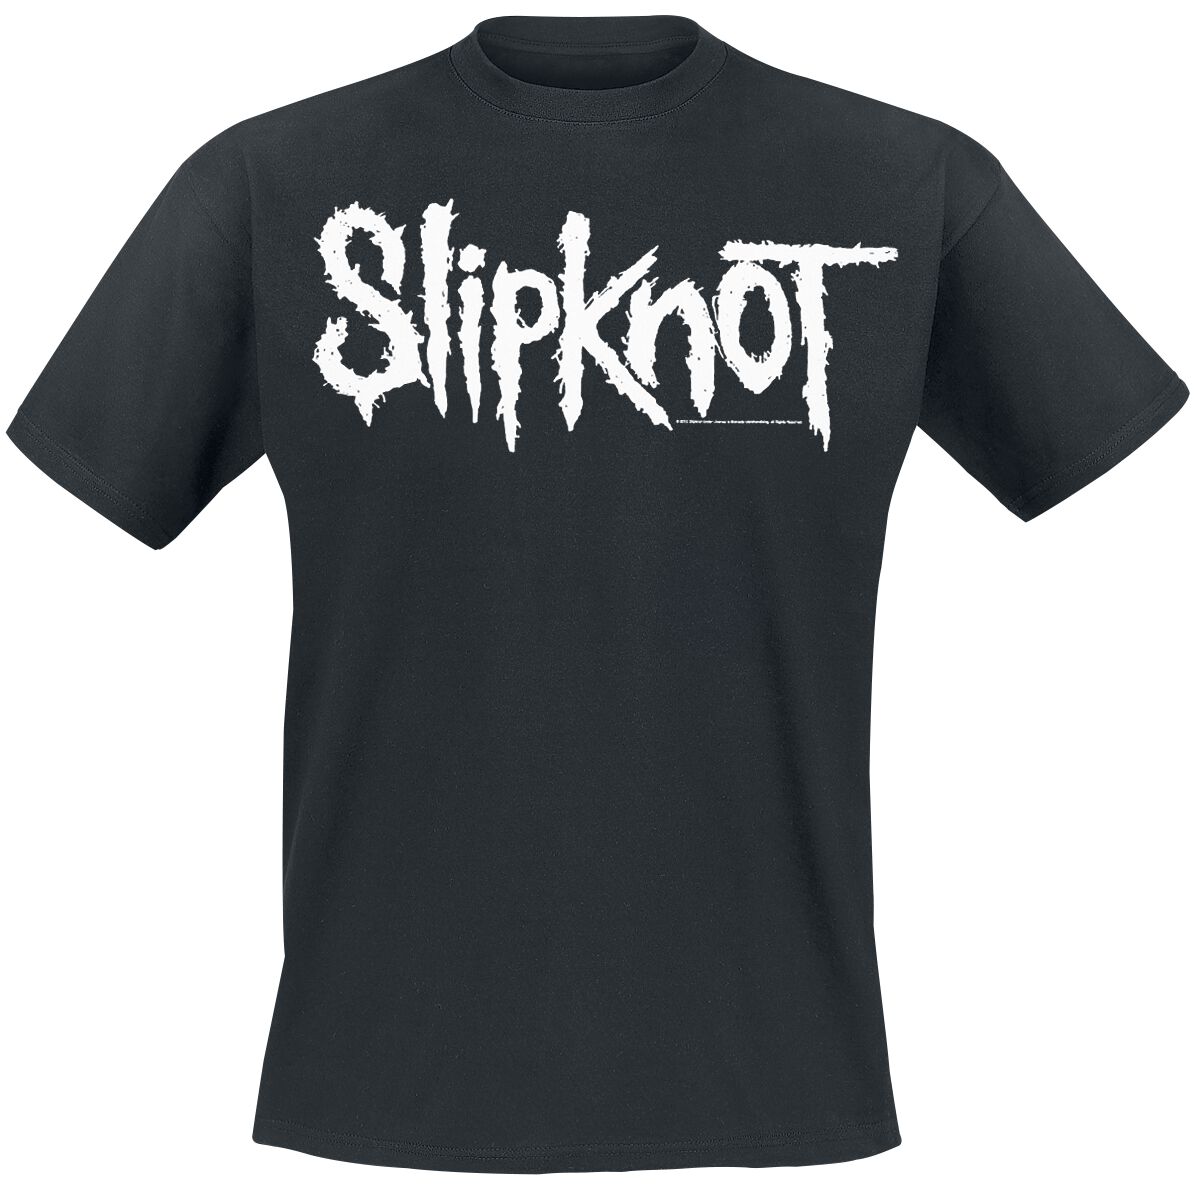 Slipknot T-Shirt - White Logo - S bis 5XL - für Männer - Größe XL - schwarz  - EMP exklusives Merchandise!